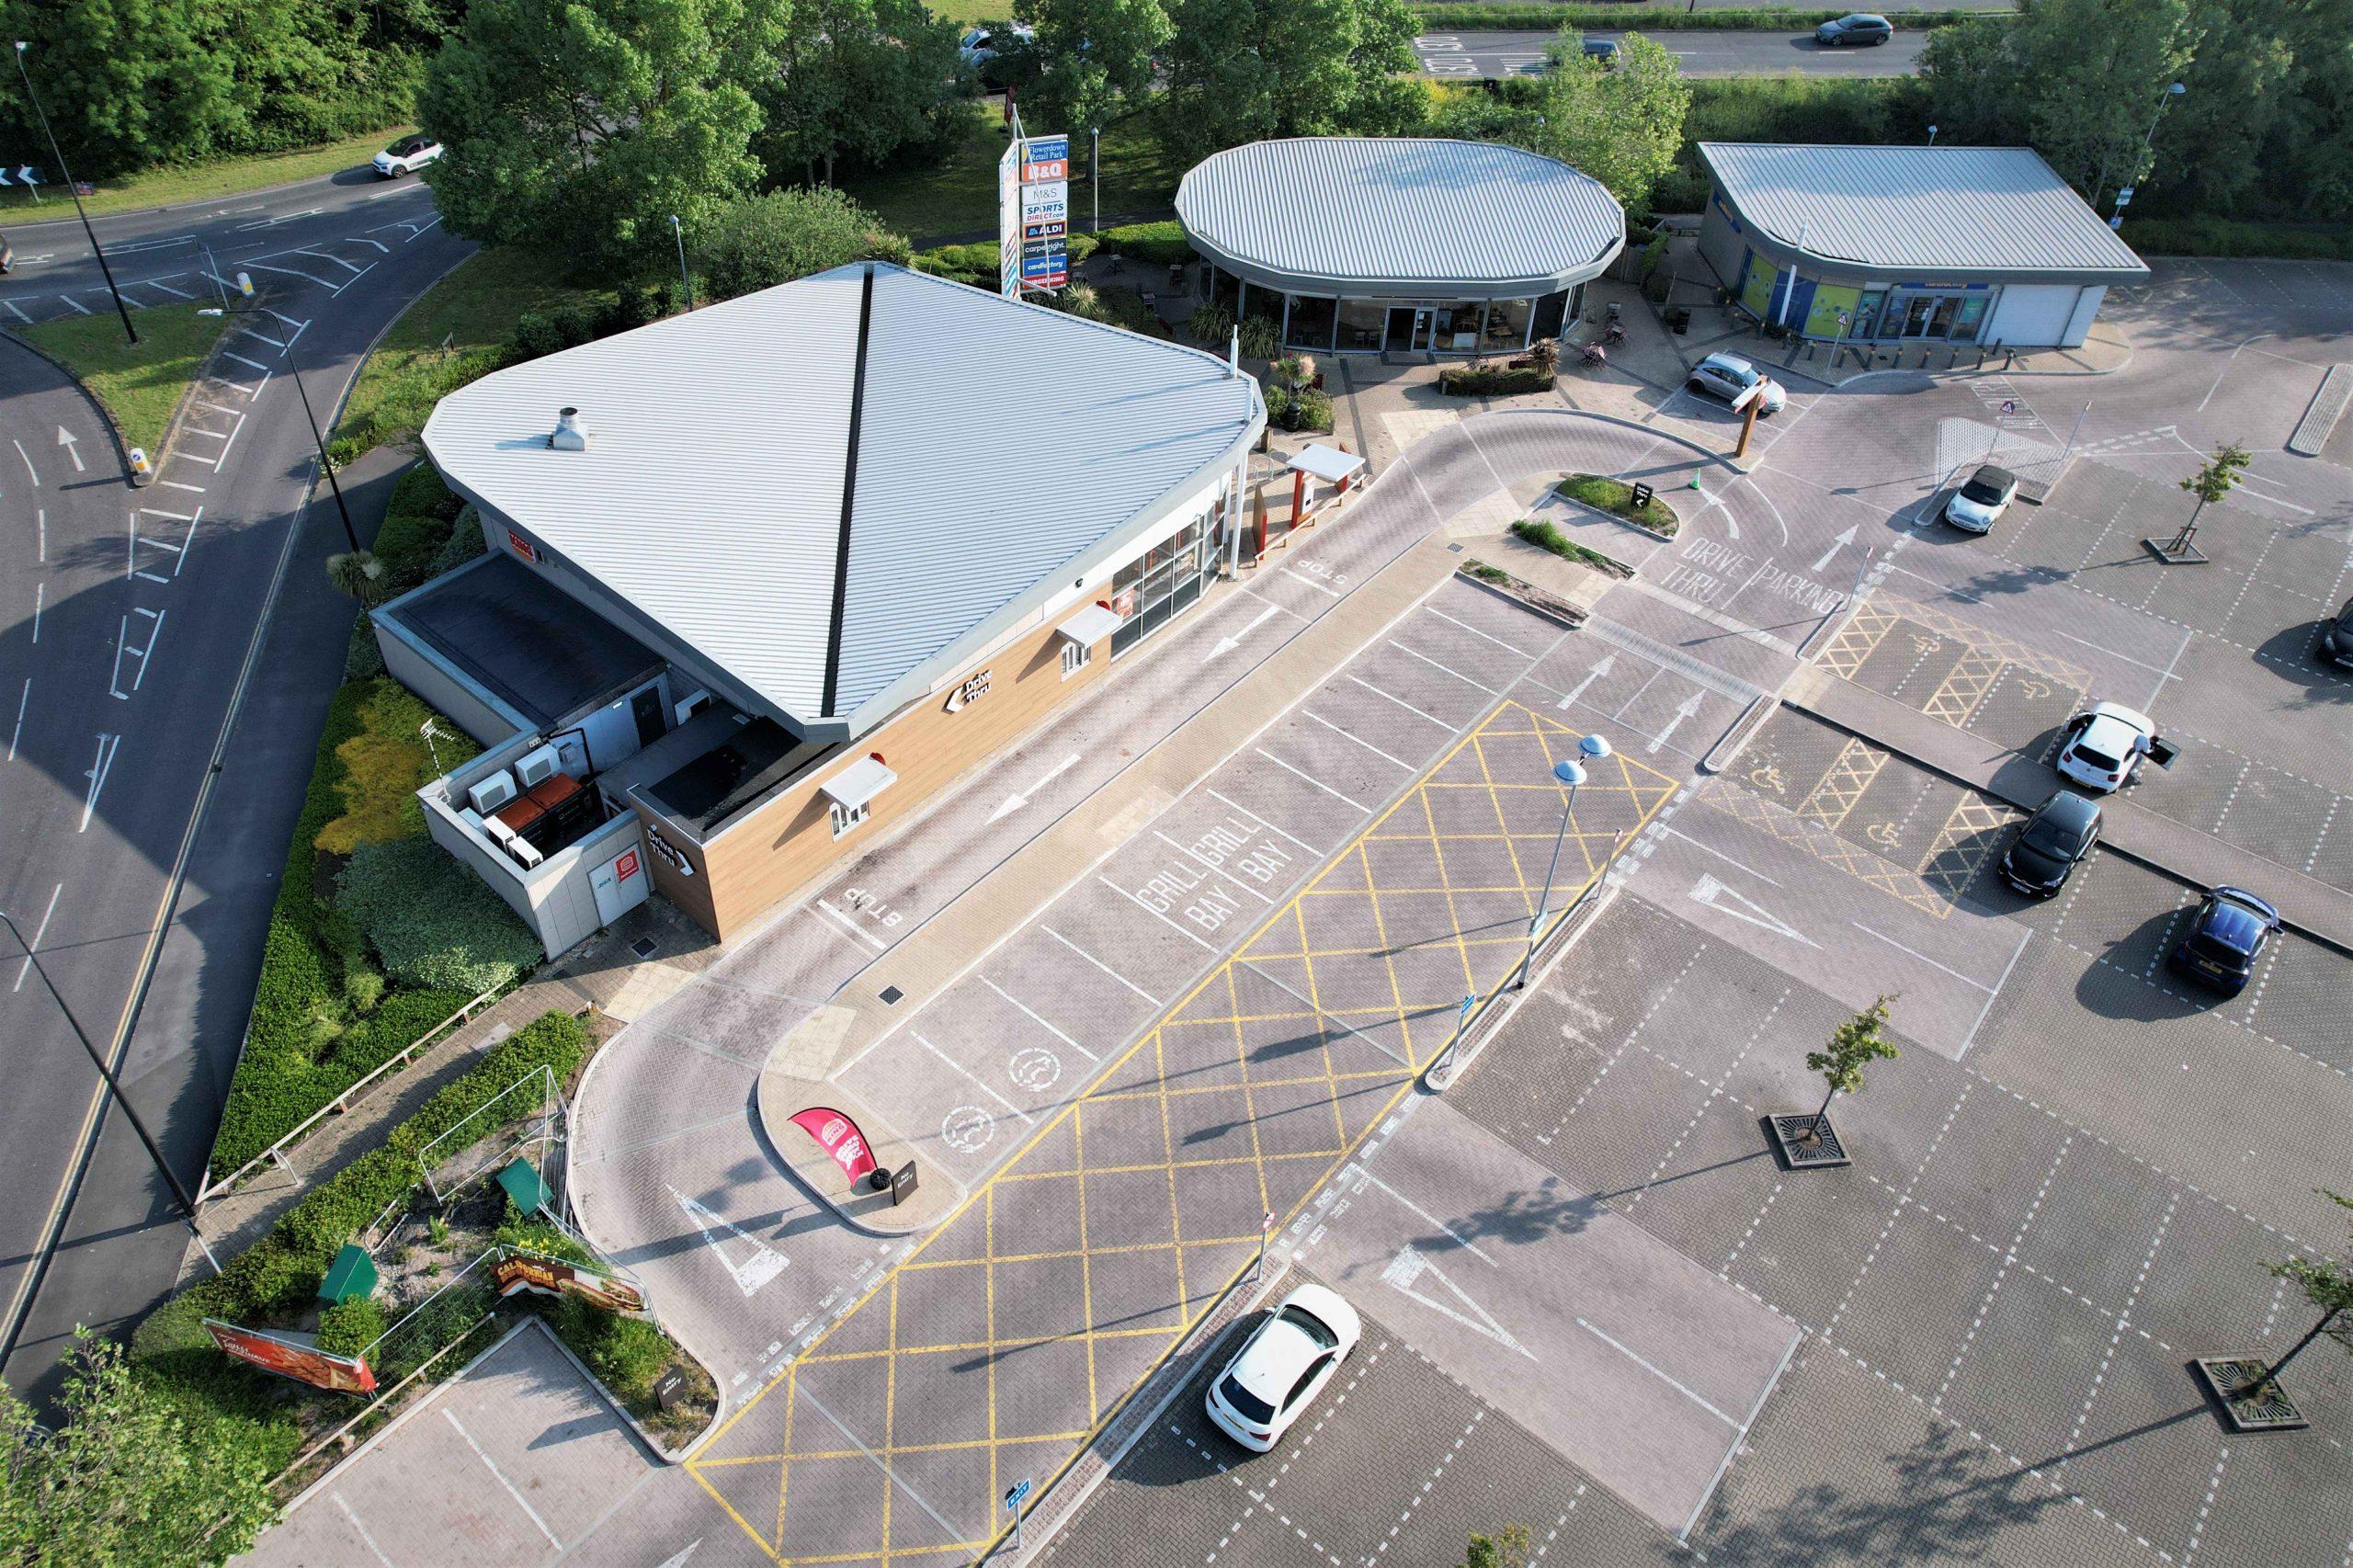 Flowerdown Retail Park – Remediation of existing SuDS car park